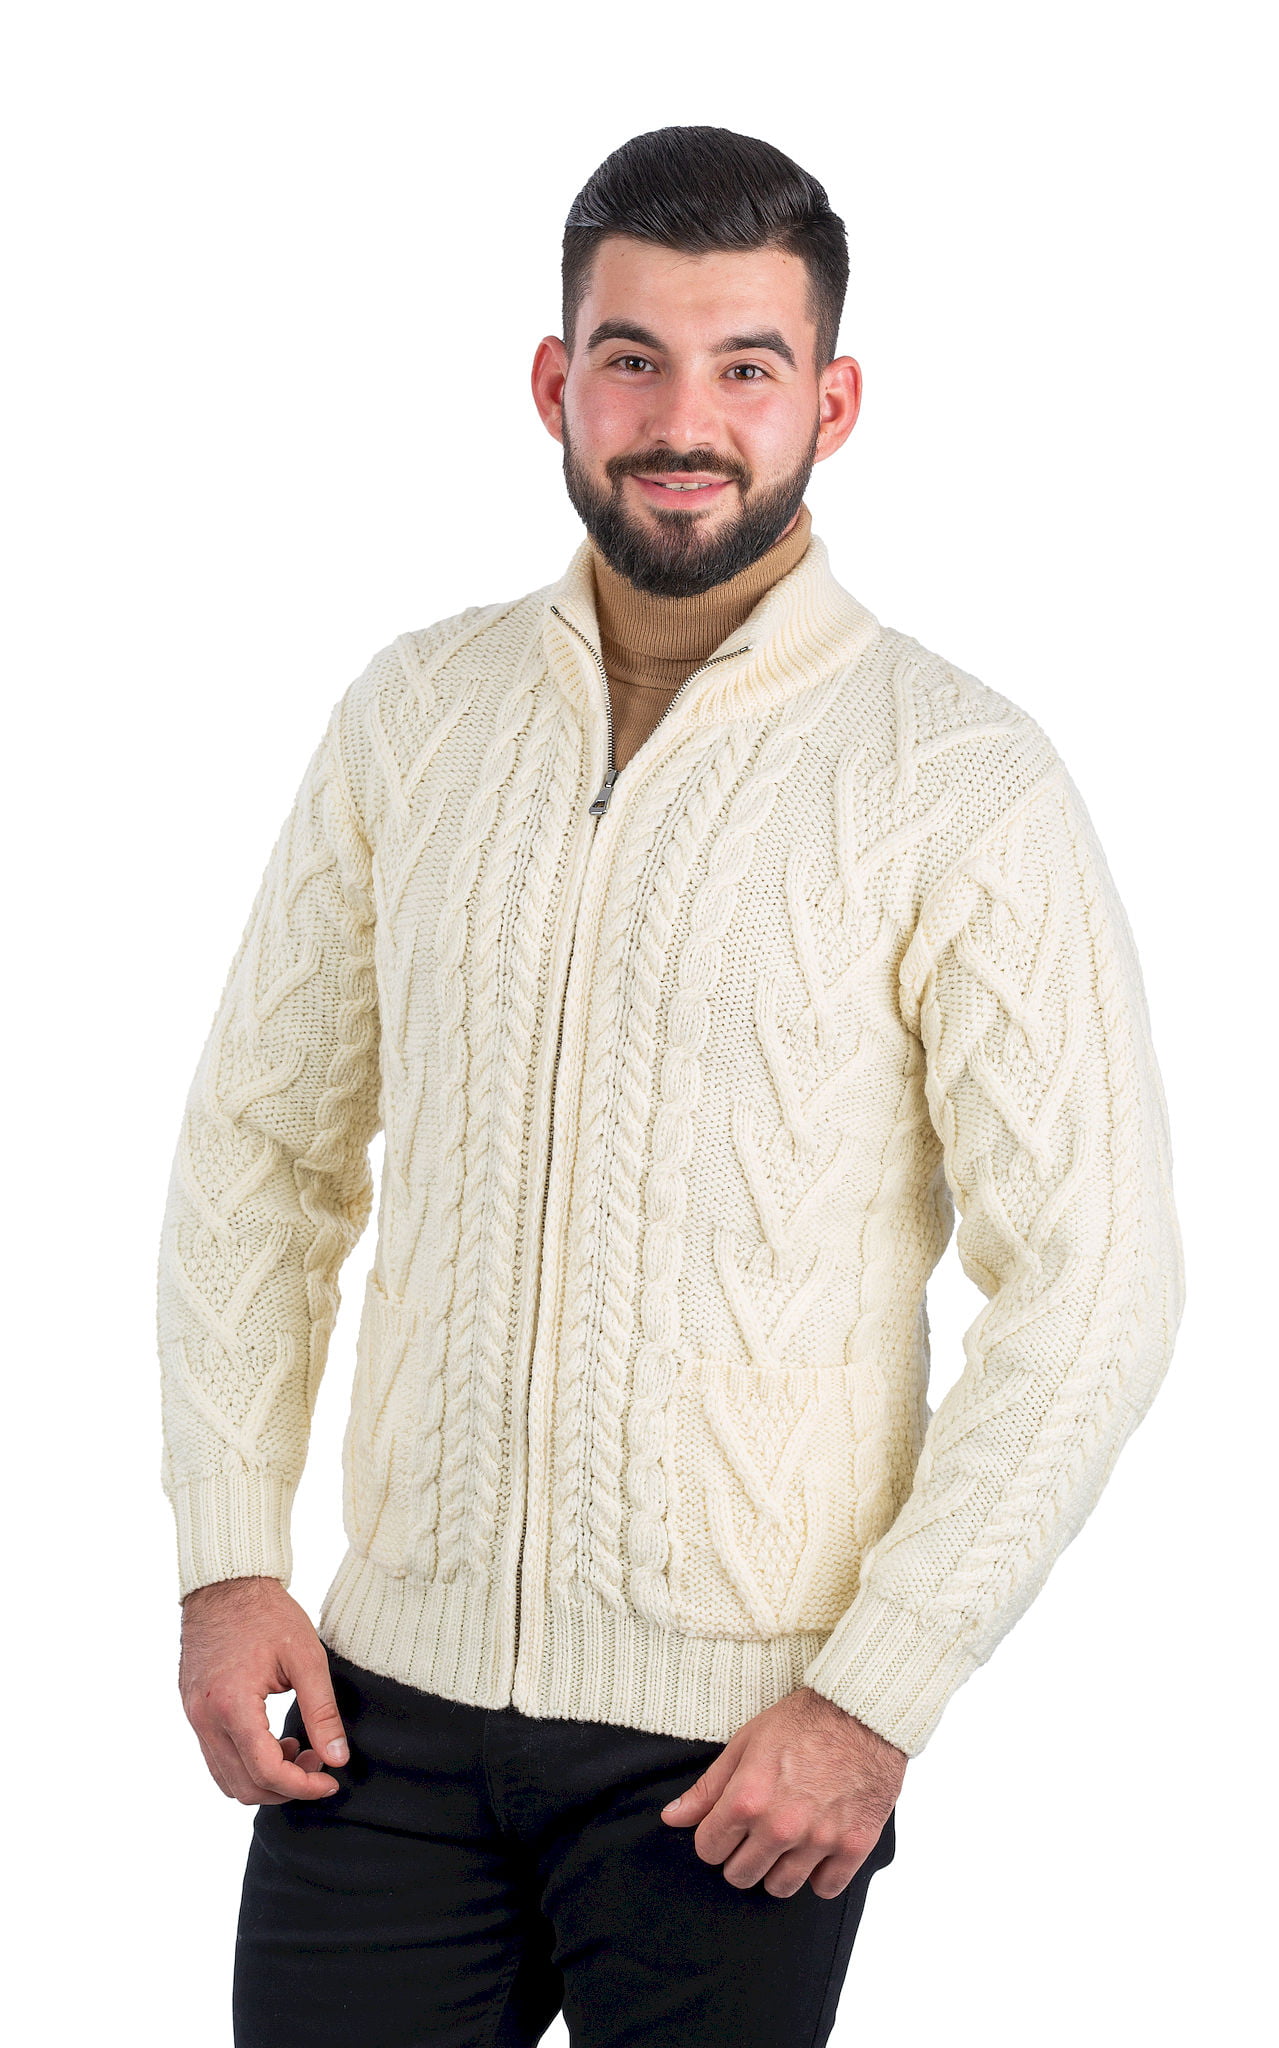 SAOL - SAOL Irish Cable Knit Cardigan Sweater for Men 100% Merino Wool ...